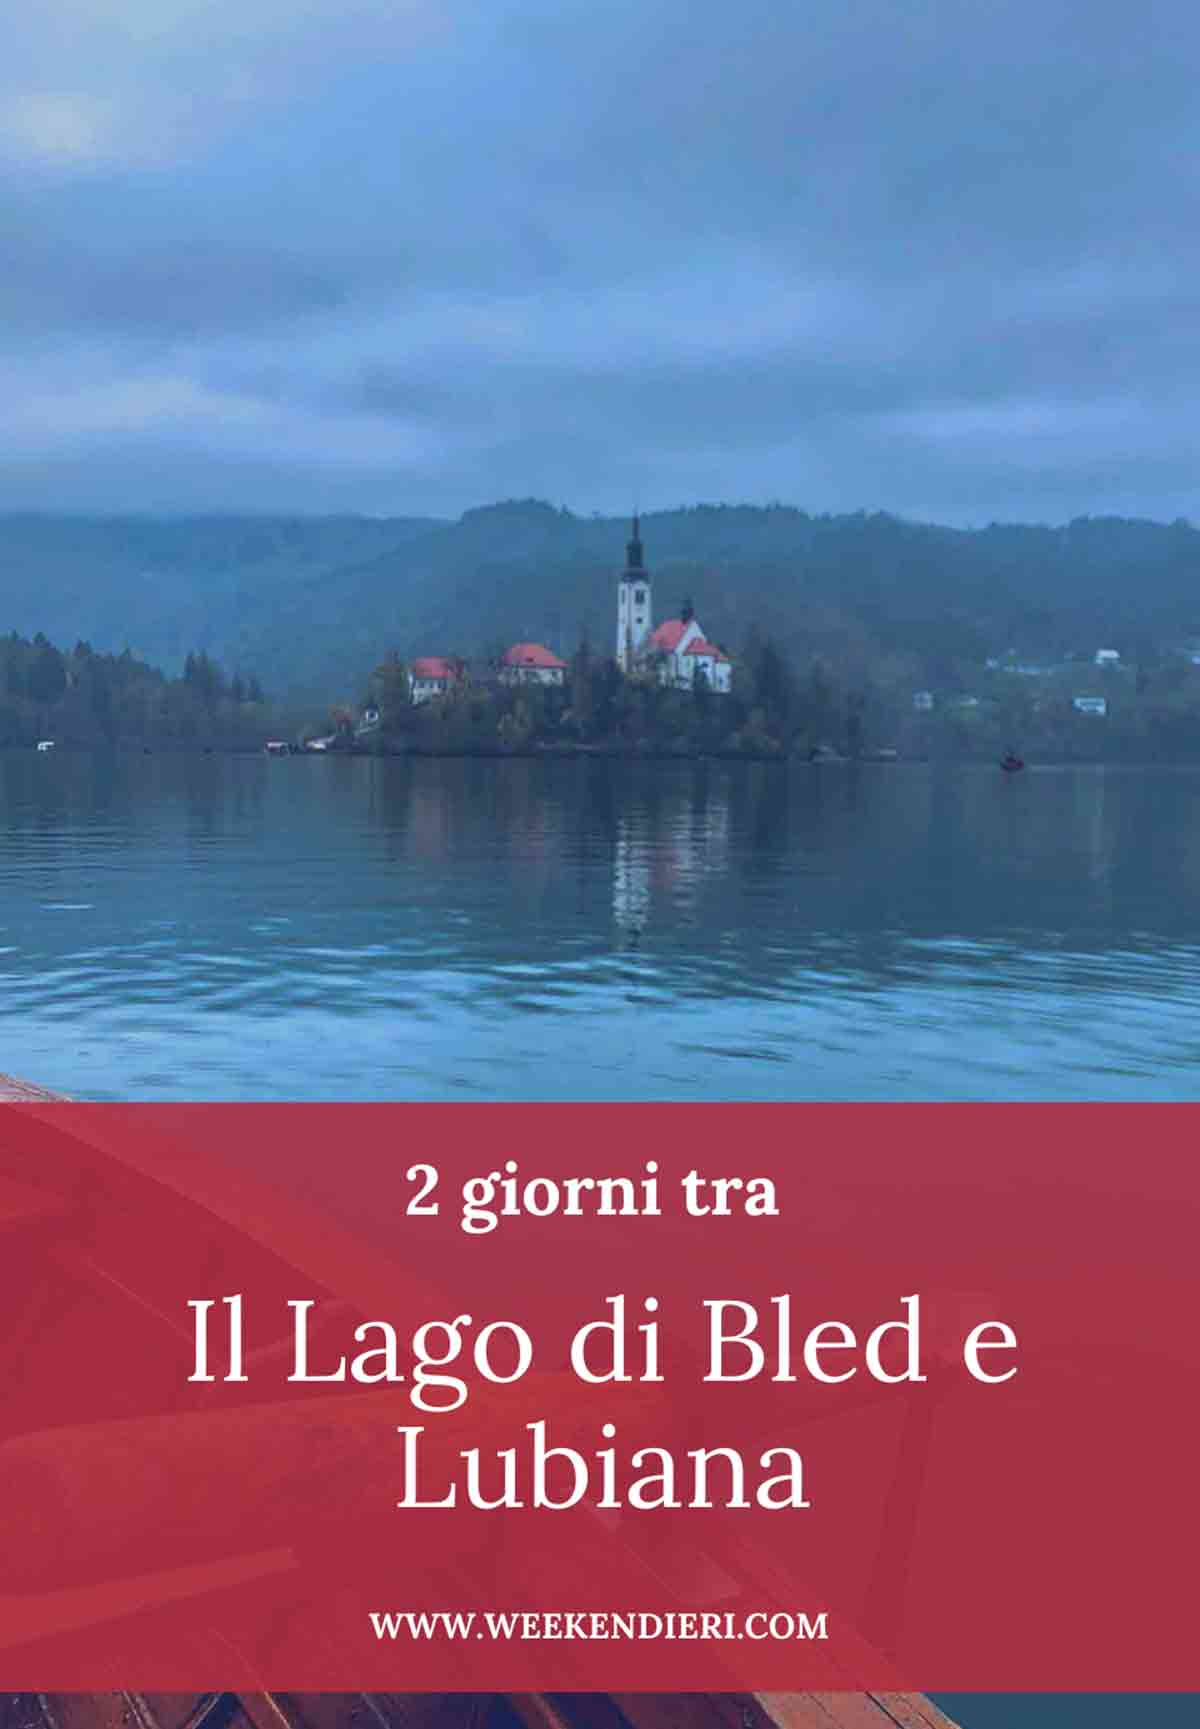 Lago di bled cosa vedere in un weekend in Slovenia